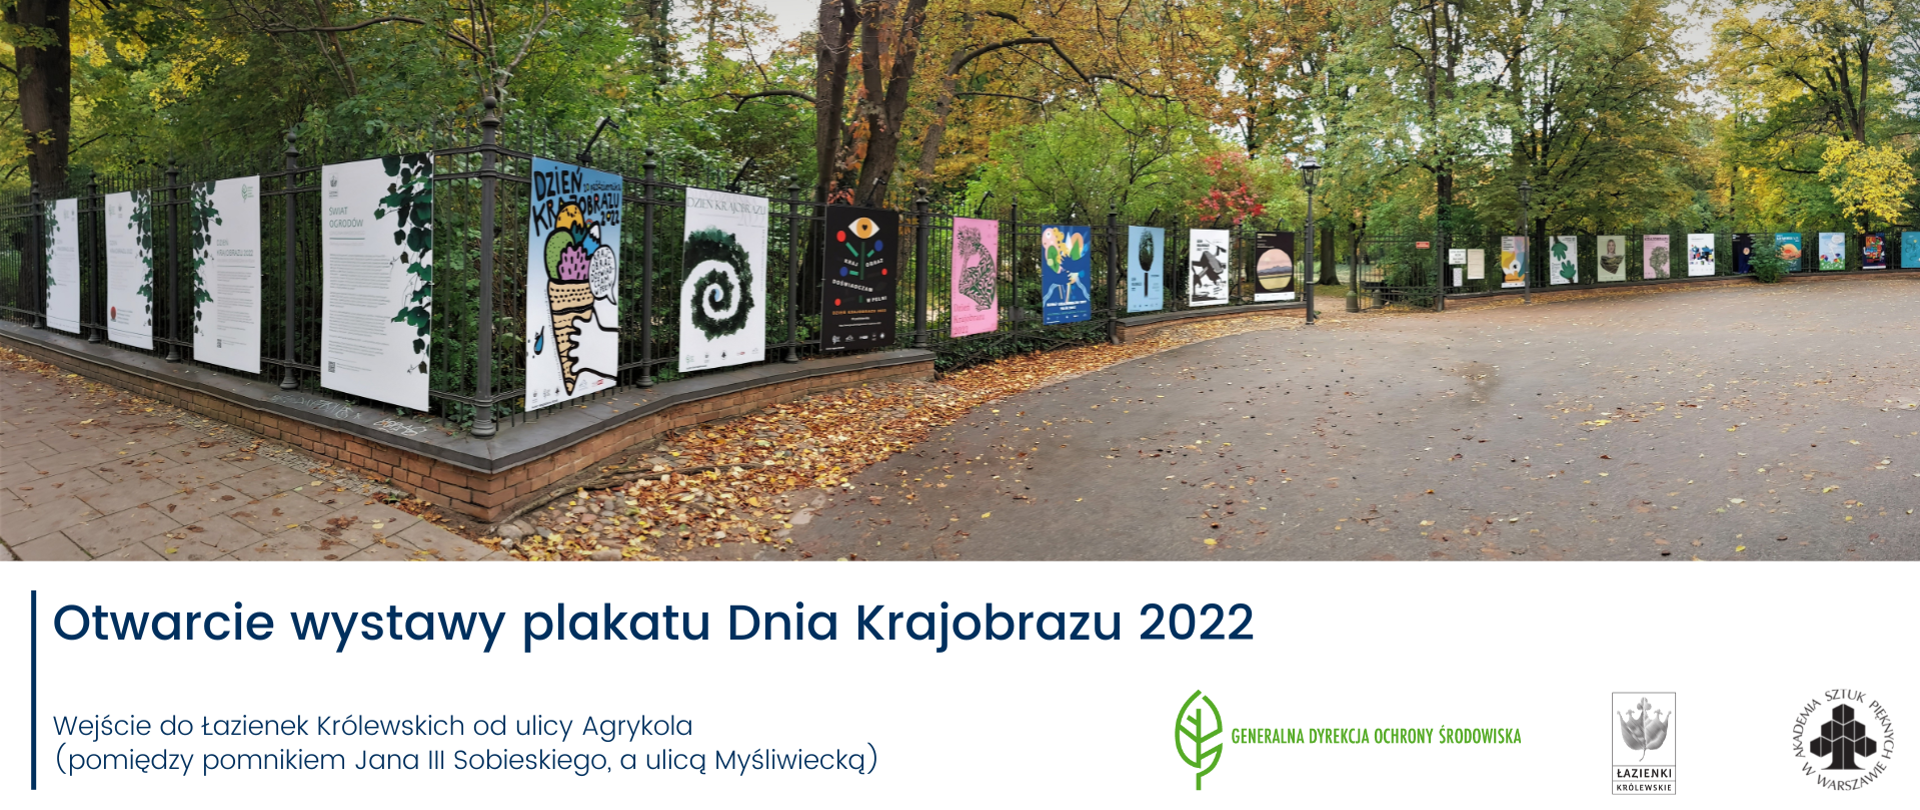 Otwarcie wystawy plakatu Dnia Krajobrazu 2022